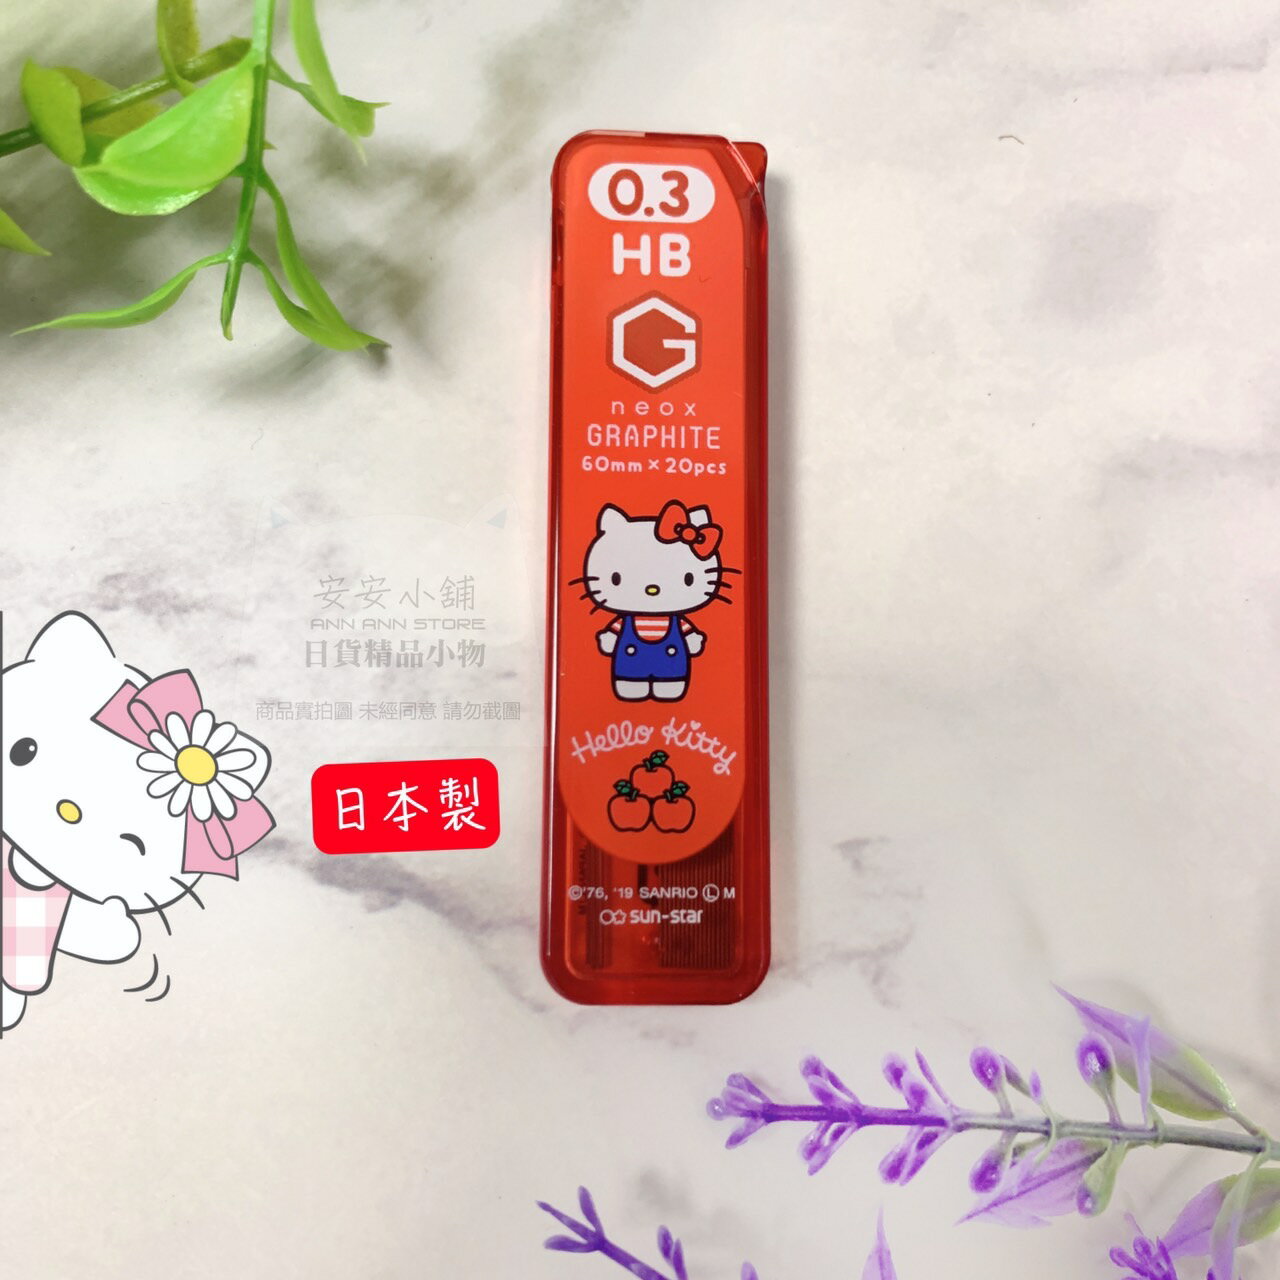 日本代購直送 S07 三麗鷗 凱蒂貓 自動鉛筆替換筆芯0.3 HB Hello Kitty 日本製GRAPHITE 筆心